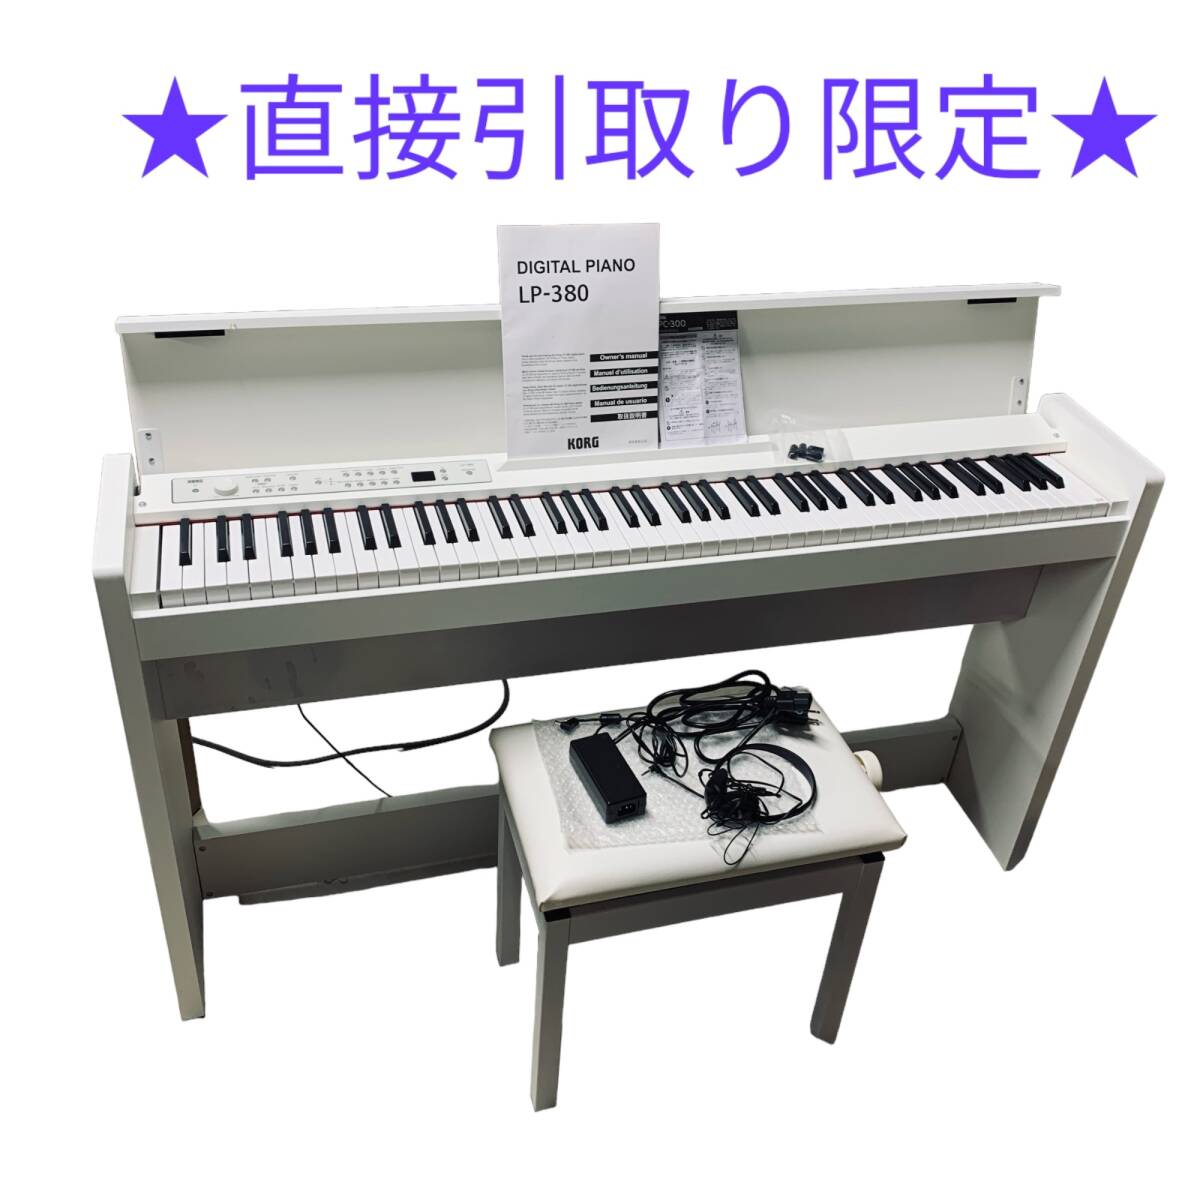 ◆中古品/直接引取り限定◆ 電子ピアノ DIGITAL PIANO LP-380 コルグ KORG 楽器 鍵盤楽器 2019年製 椅子 説明書付 J62009N_画像1